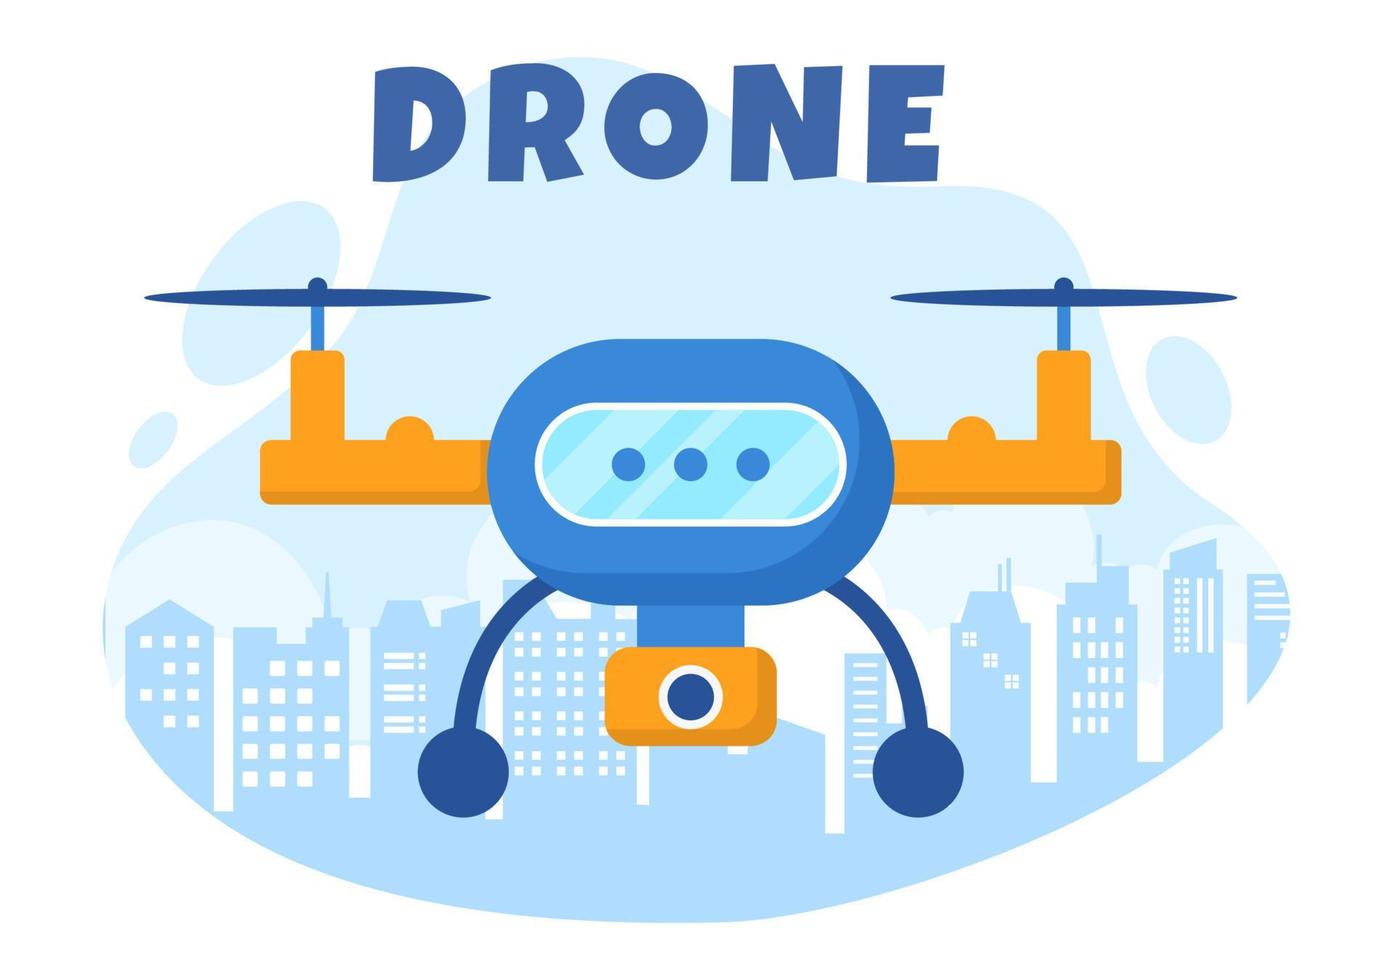 dron con control remoto de cámara impulsado volando para tomar fotografías y grabar videos en una ilustración de fondo de caricatura plana vector